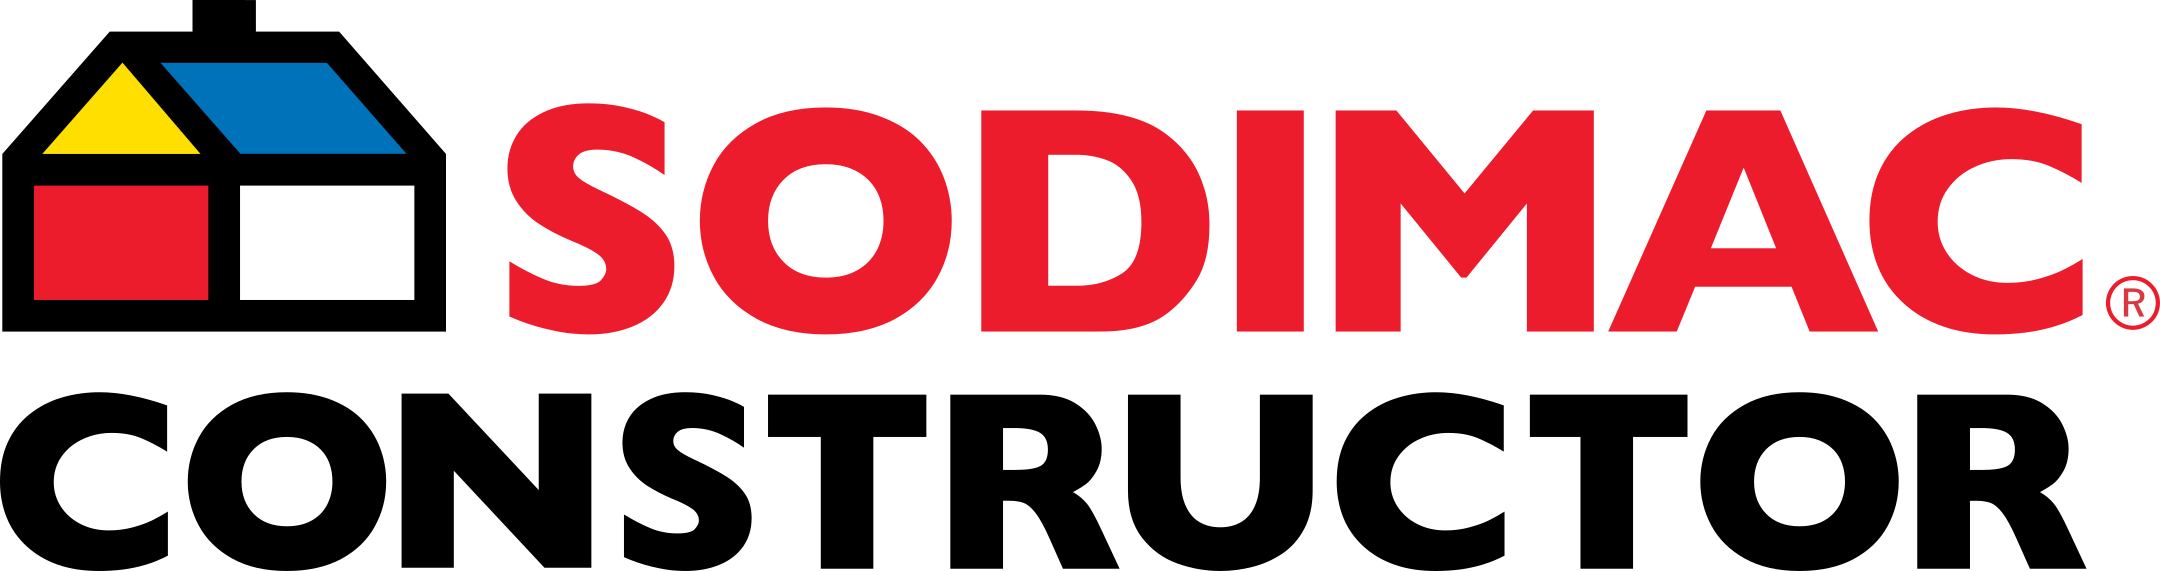 sodimac constructor logo 1 - Sodimac Constructor Logo